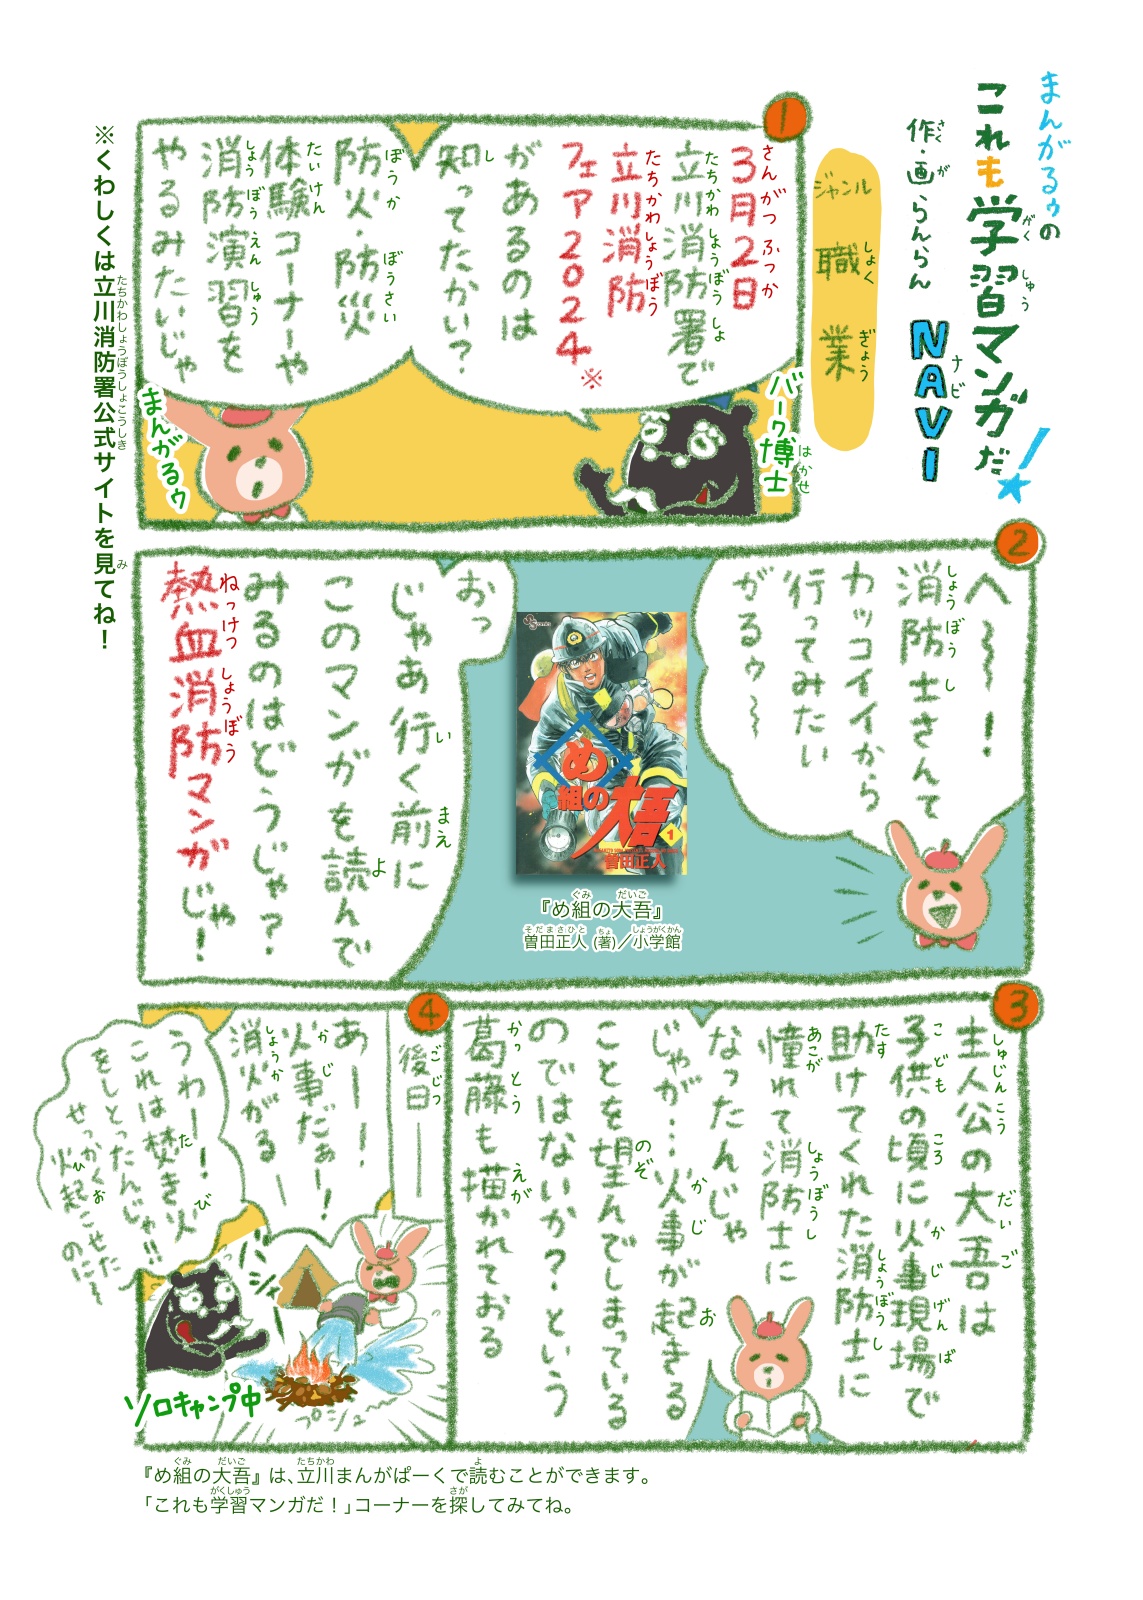 https://mangapark.jp/topics/2024/02/25/images/mangaroo_vol053.jpg